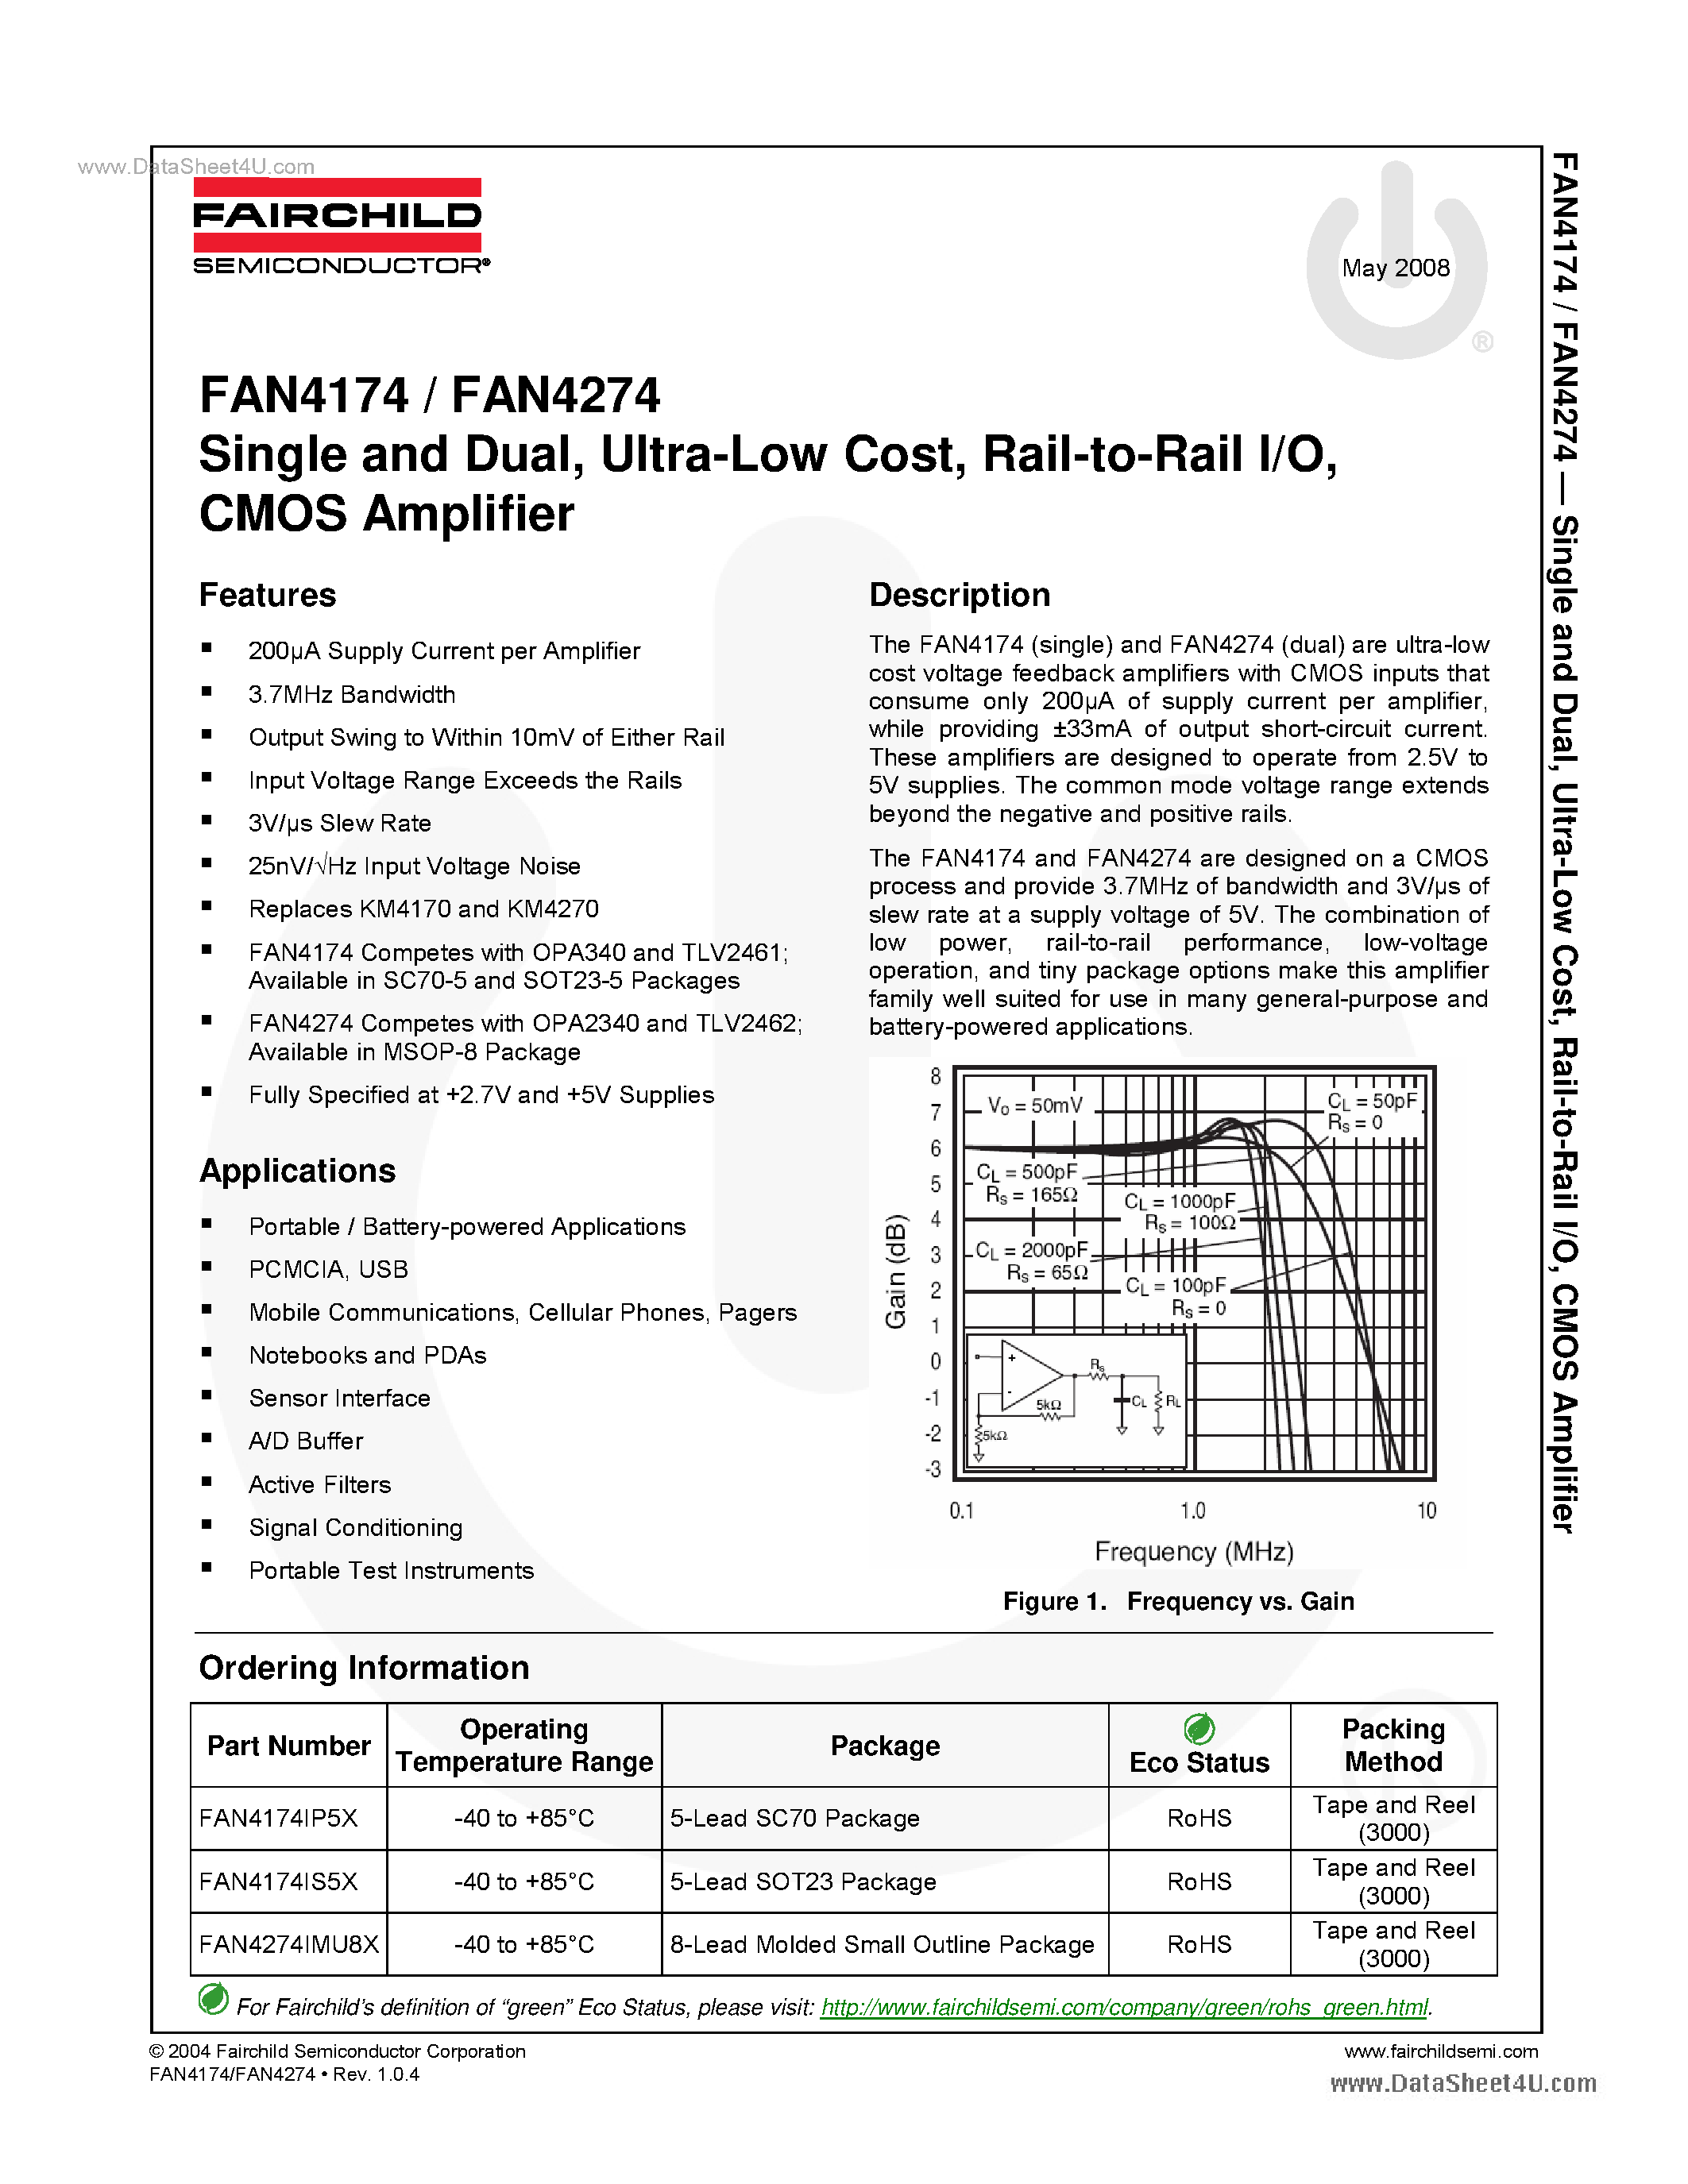 Datasheet FAN4174 - (FAN4174 / FAN4274) CMOS Amplifier page 1